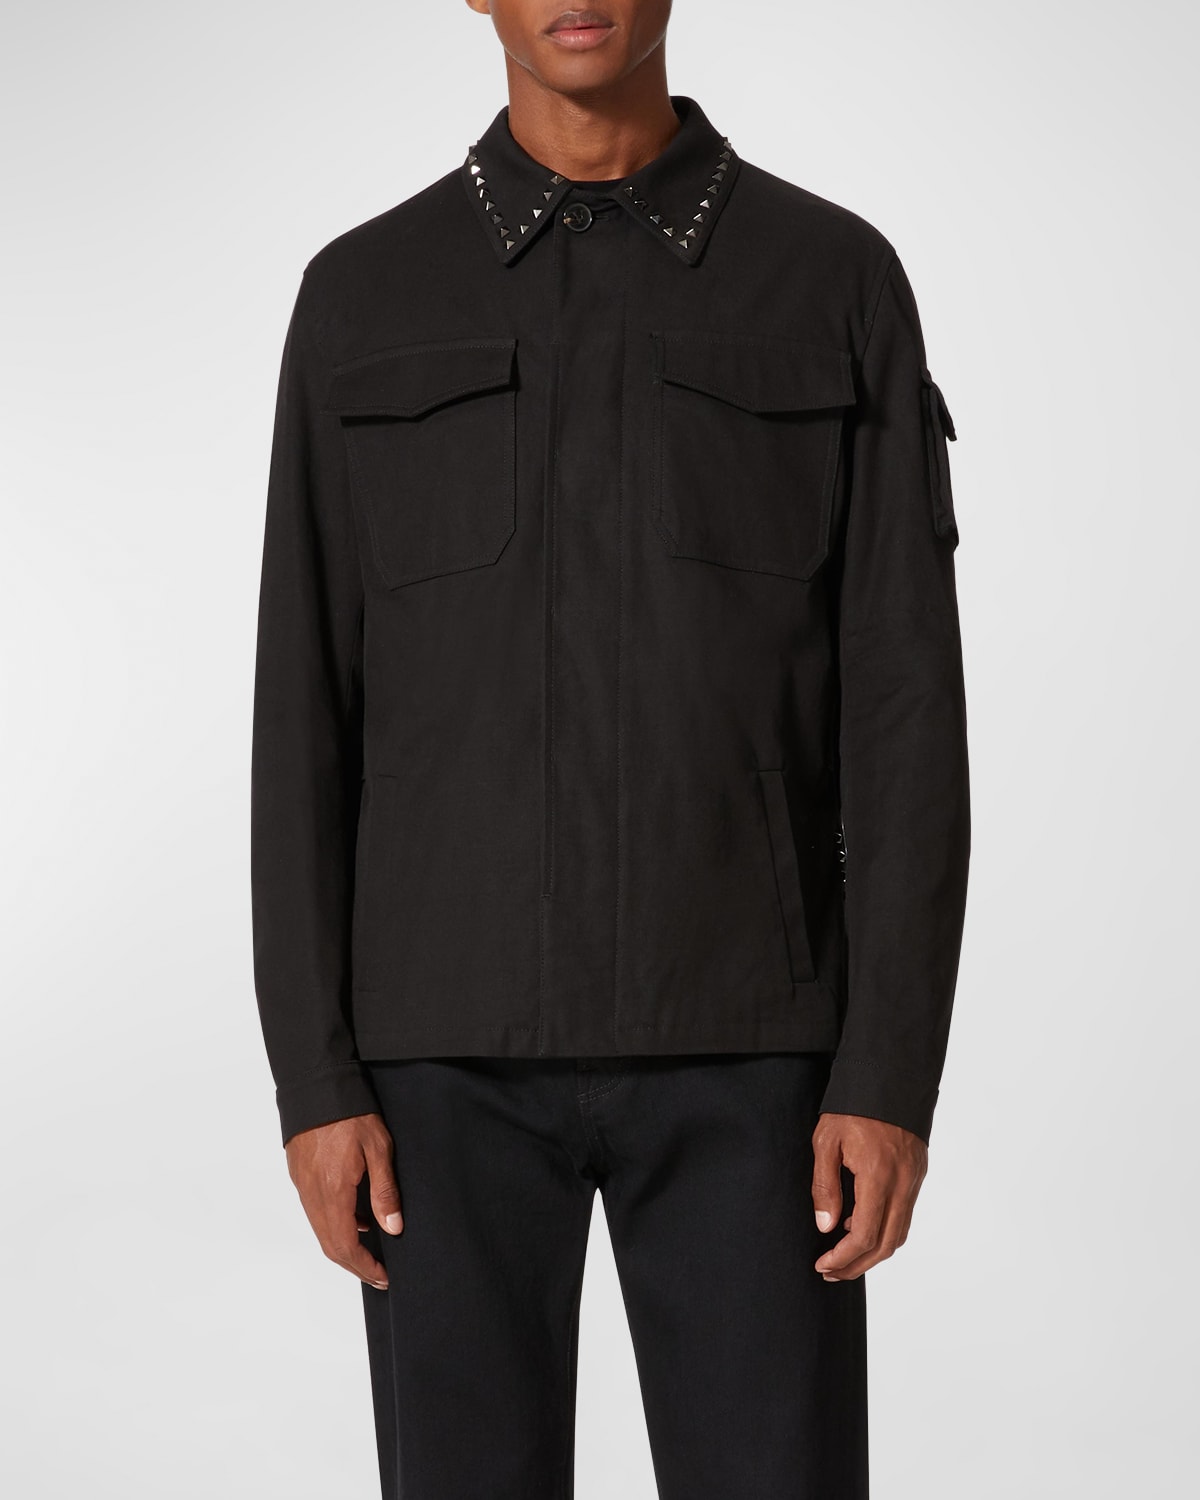 Valentino Garavani Men's Rockstud Button-Down Shirt Jacket